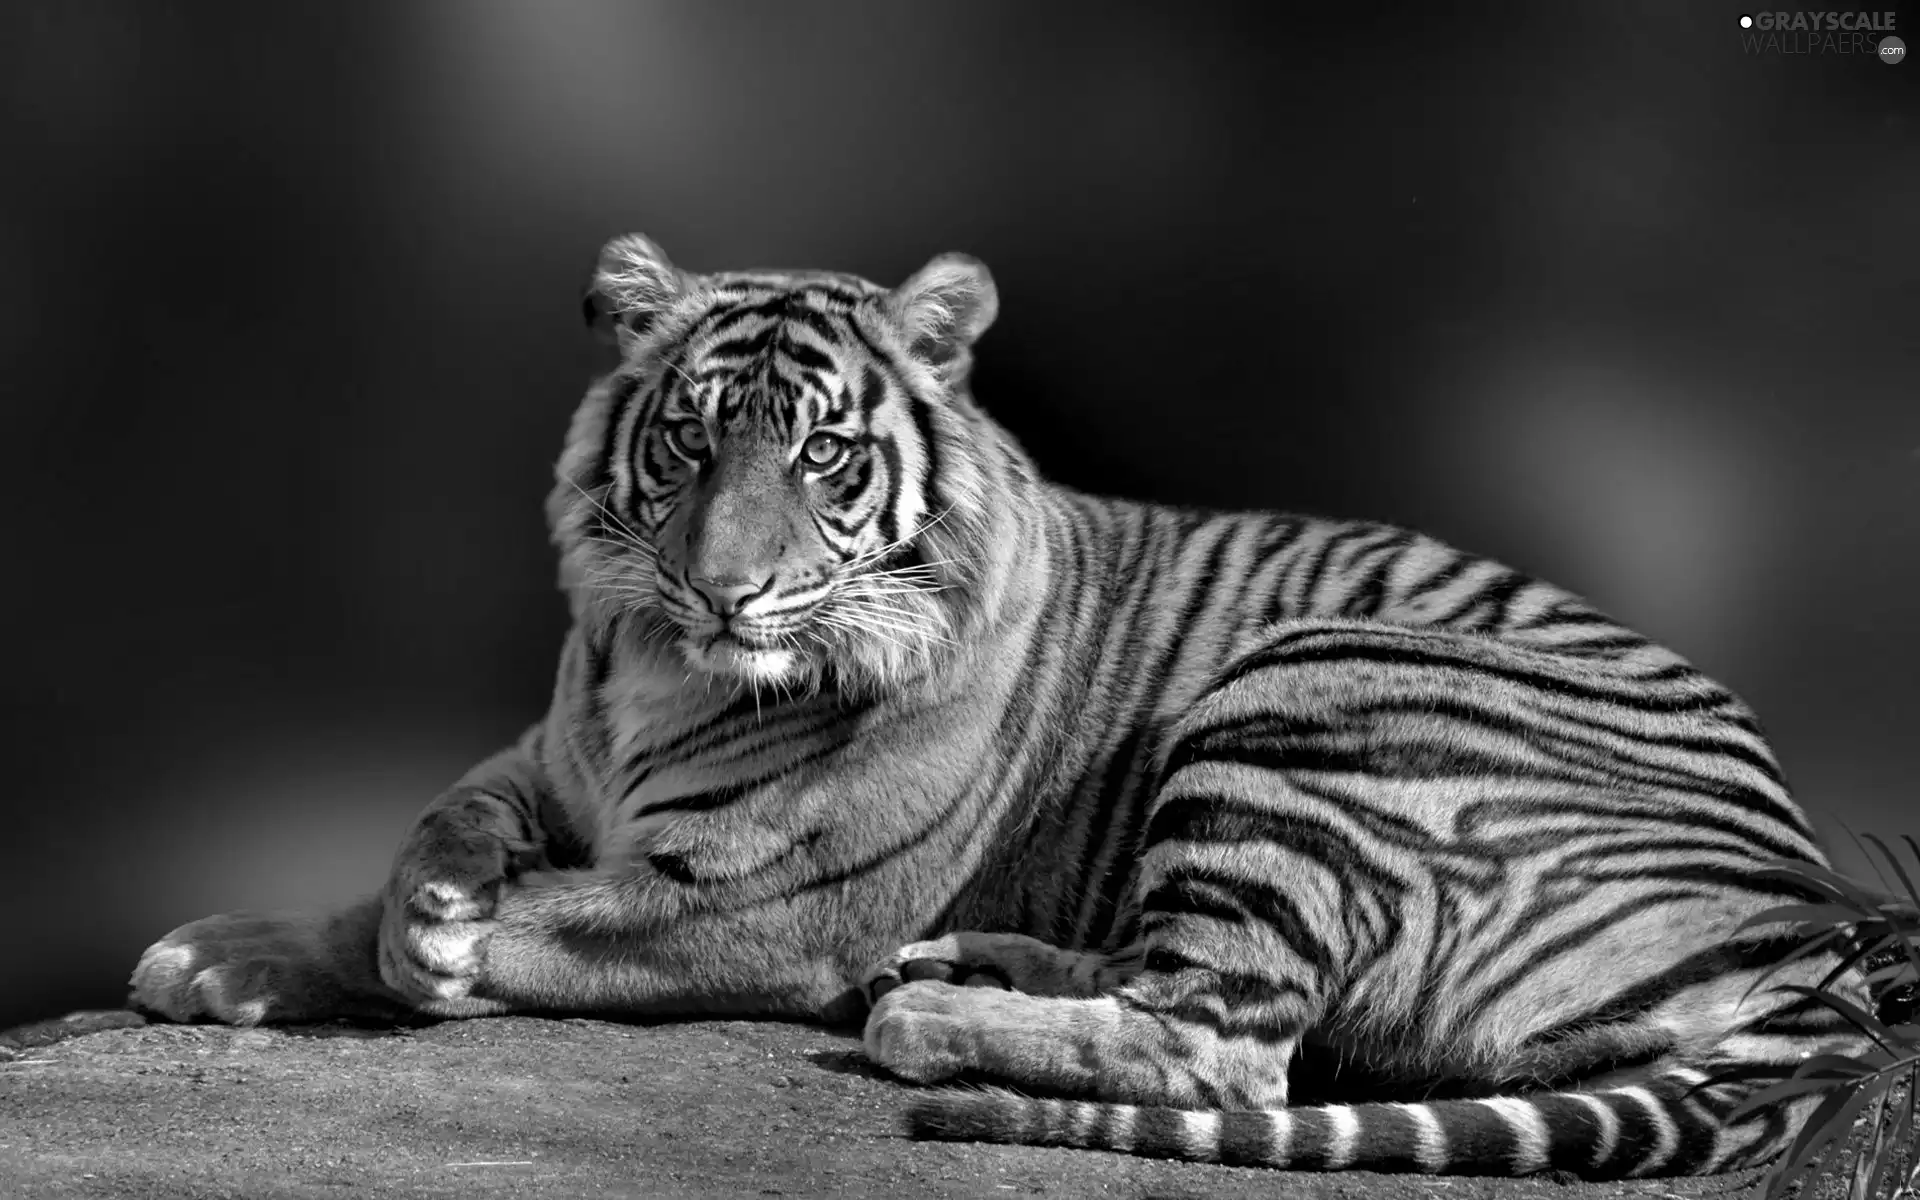 Big, tiger